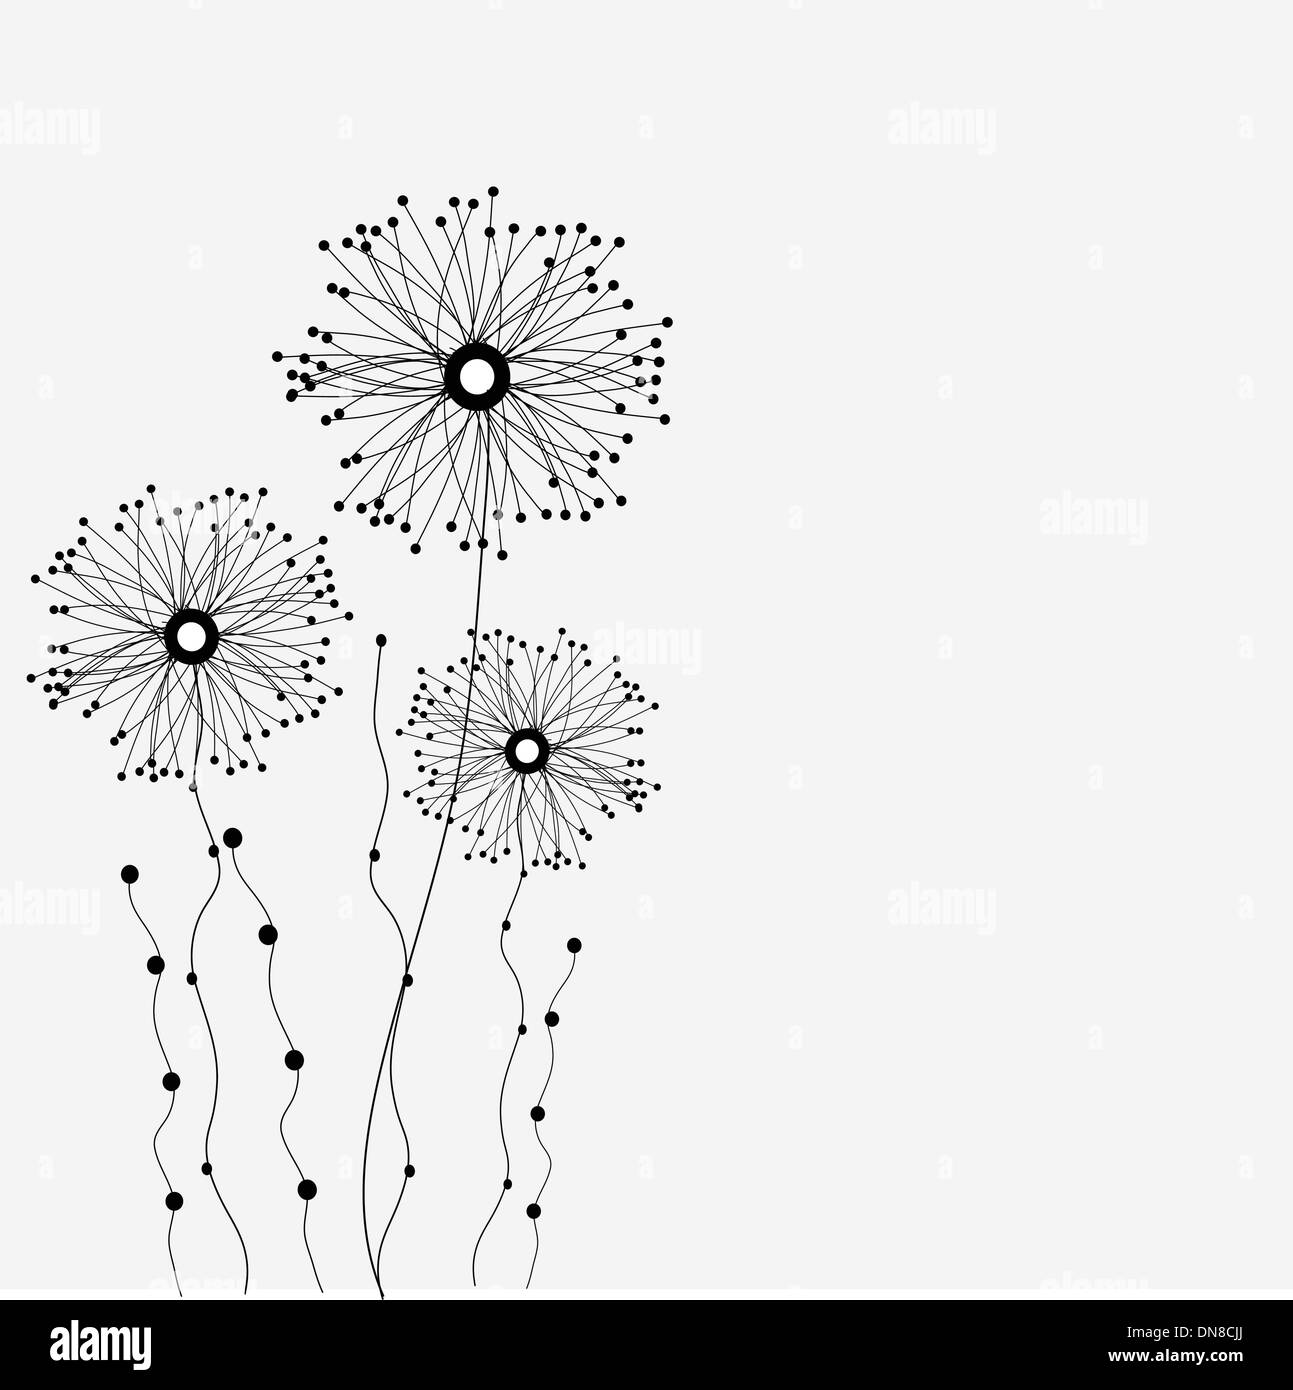 Với phong cách họa tiết đơn giản nhưng vô cùng tinh tế, hình ảnh những bông hoa vẽ tay đen trắng như đang tỏa sáng trên nền giấy. Hãy để tâm hồn được thư giãn và tìm hiểu thêm về sự tinh tế của nghệ thuật này.